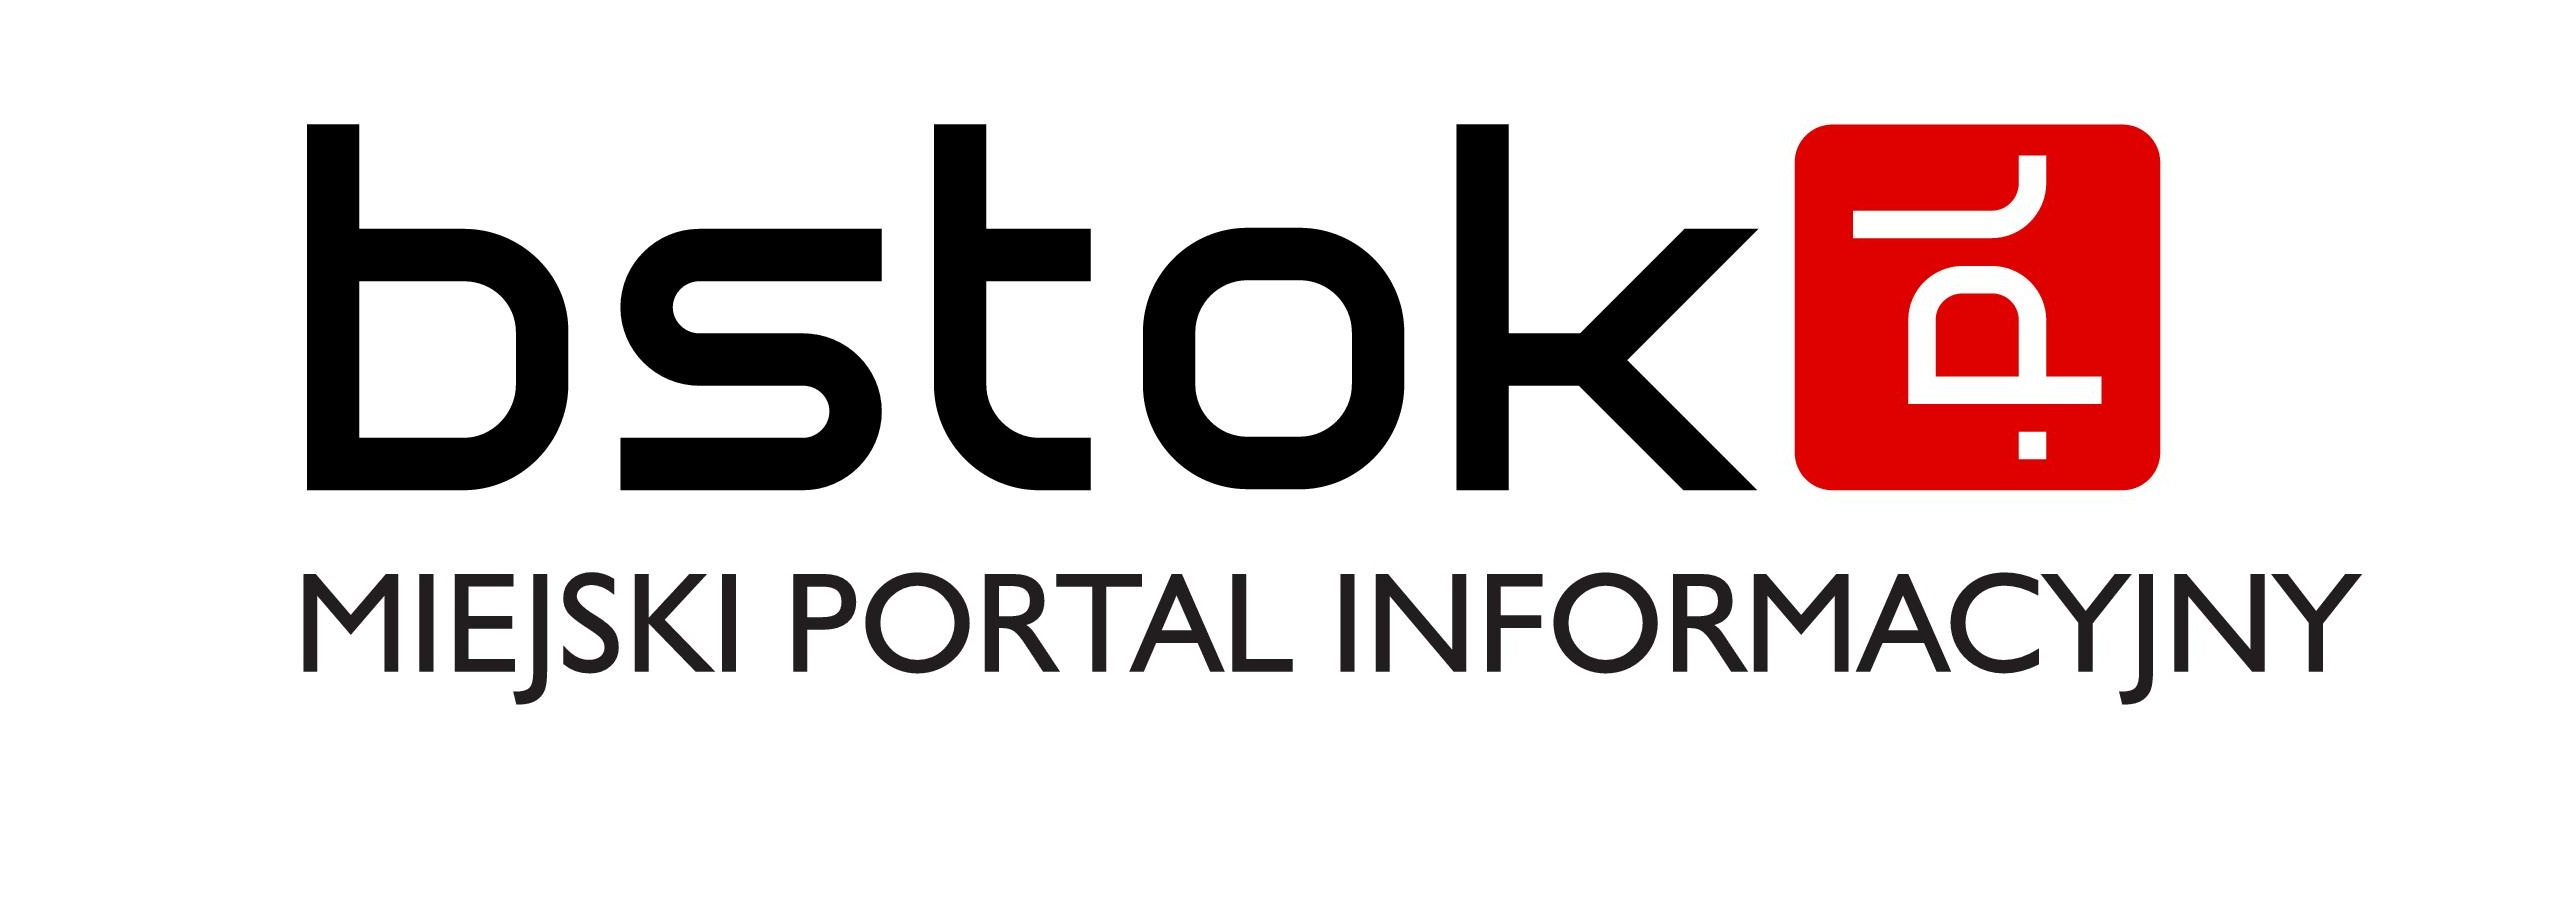 bstok Logo photo - 1